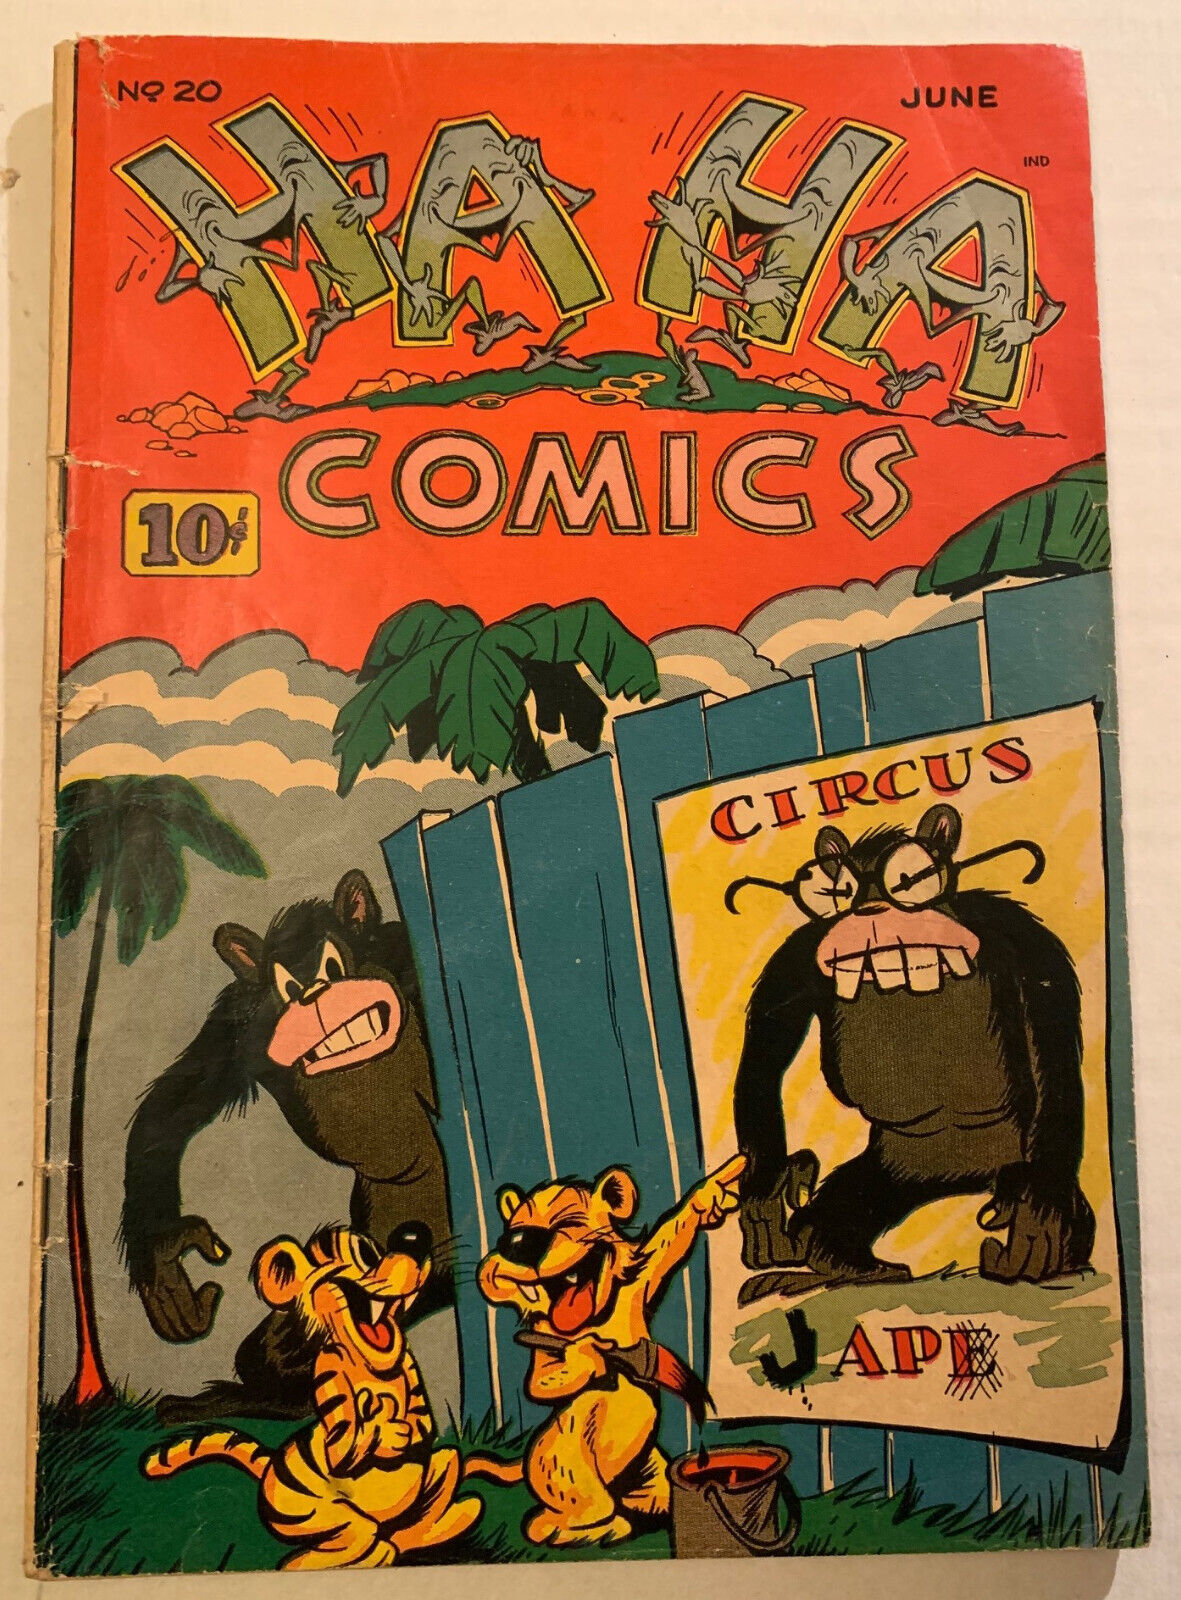 Ha Ha Comics #20 1945 WWII propaganda cover